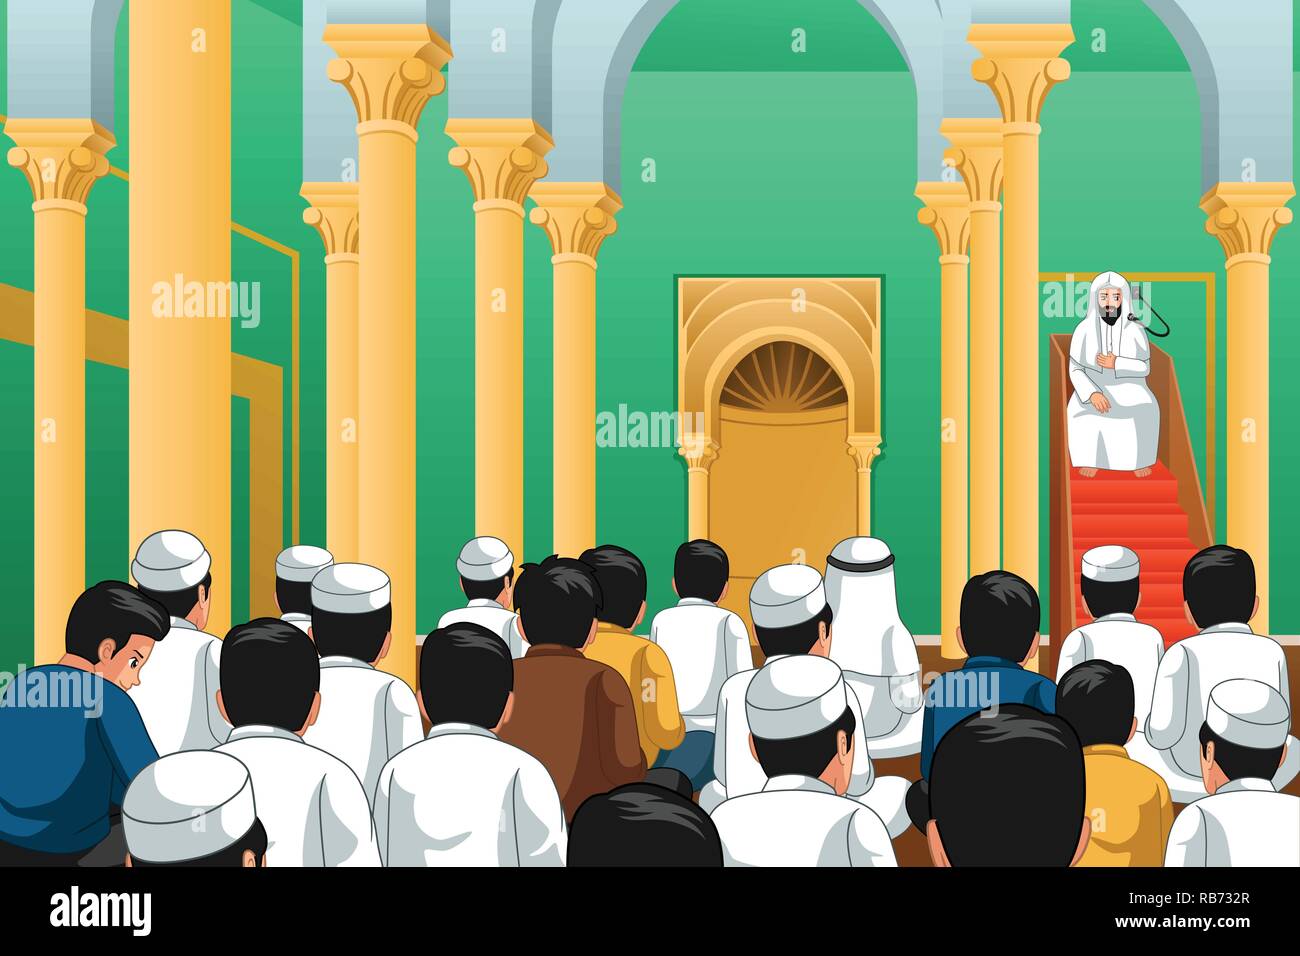 Un vecteur illustration de Musulmans priant dans une mosquée Illustration de Vecteur